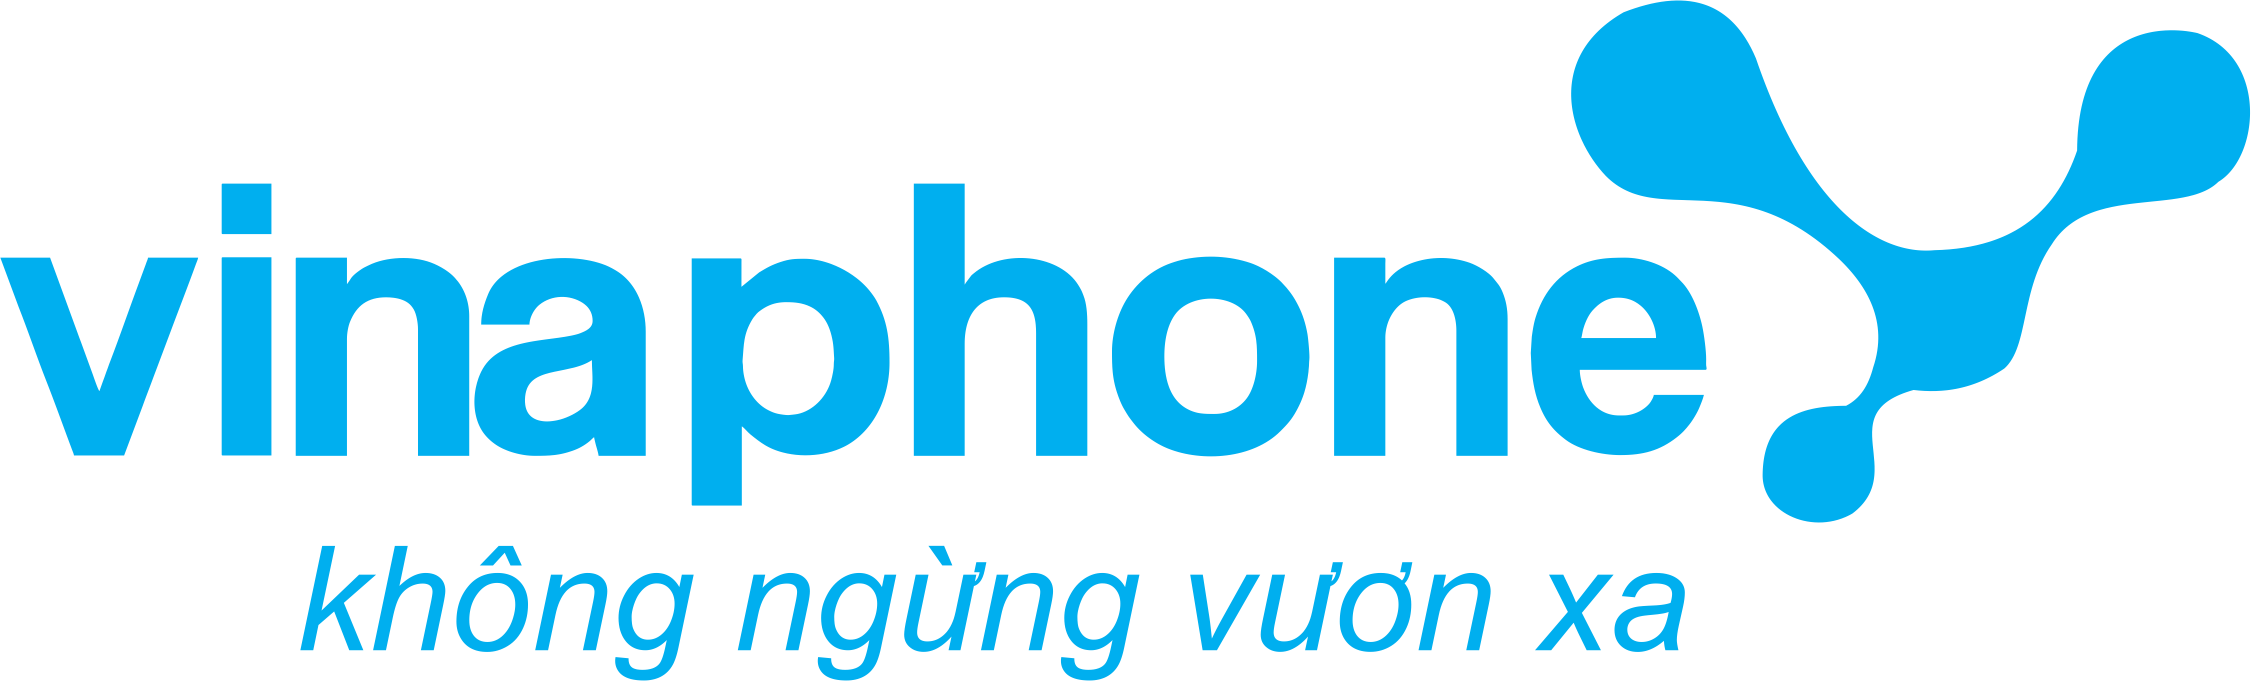 Vector Logo Vinaphone không ngừng vươn xa CorelDRAW